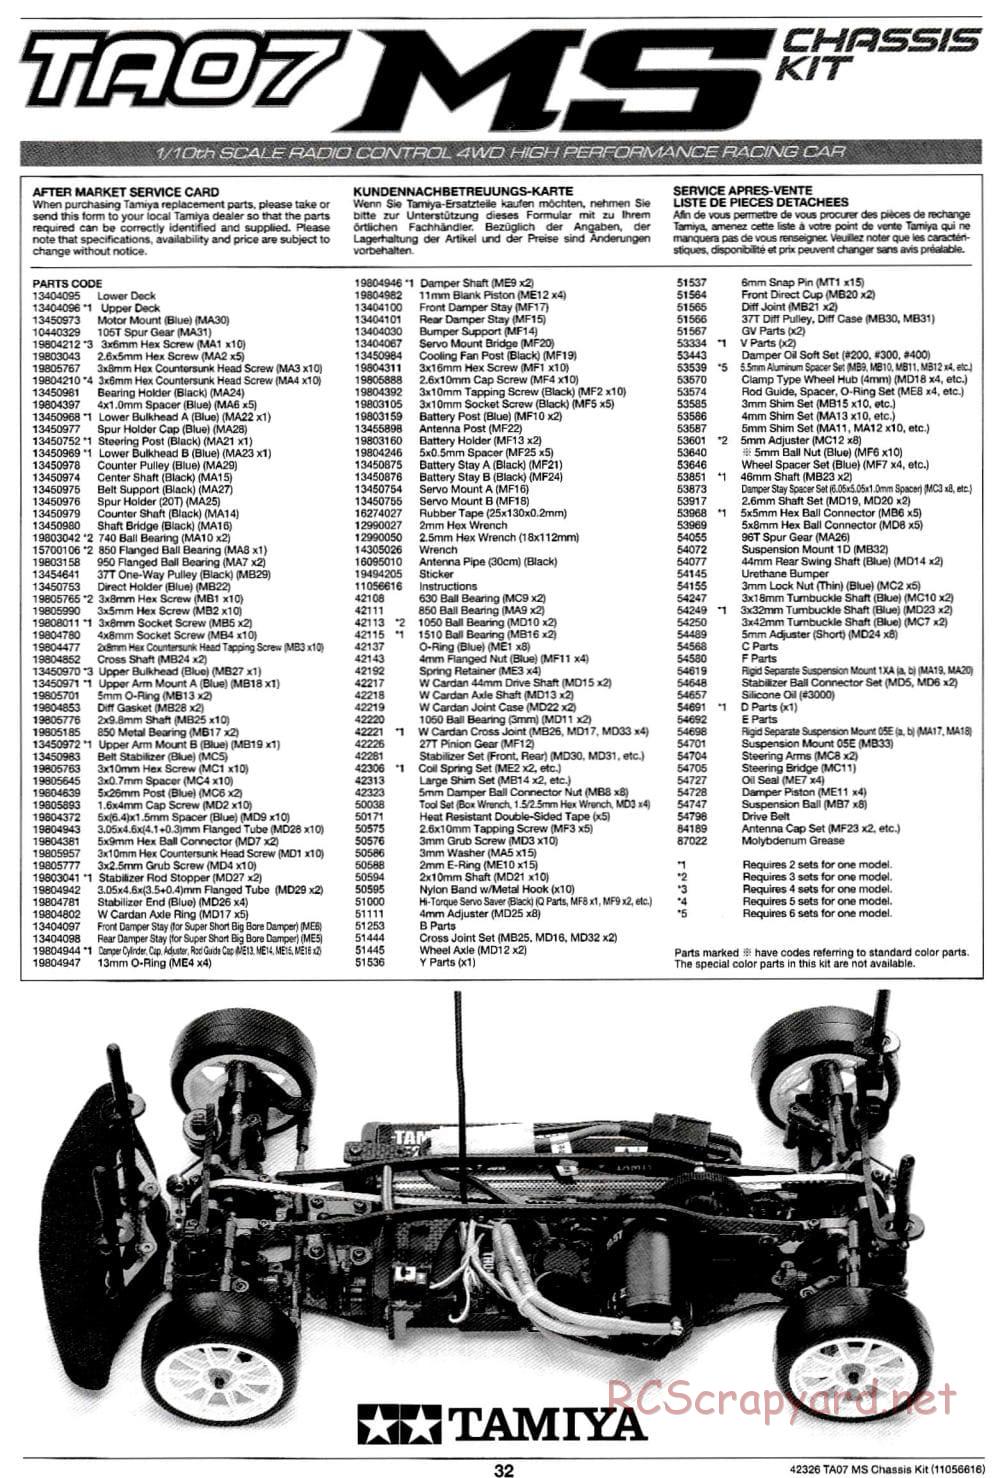 Tamiya - TA07 MS Chassis - Manual - Page 32